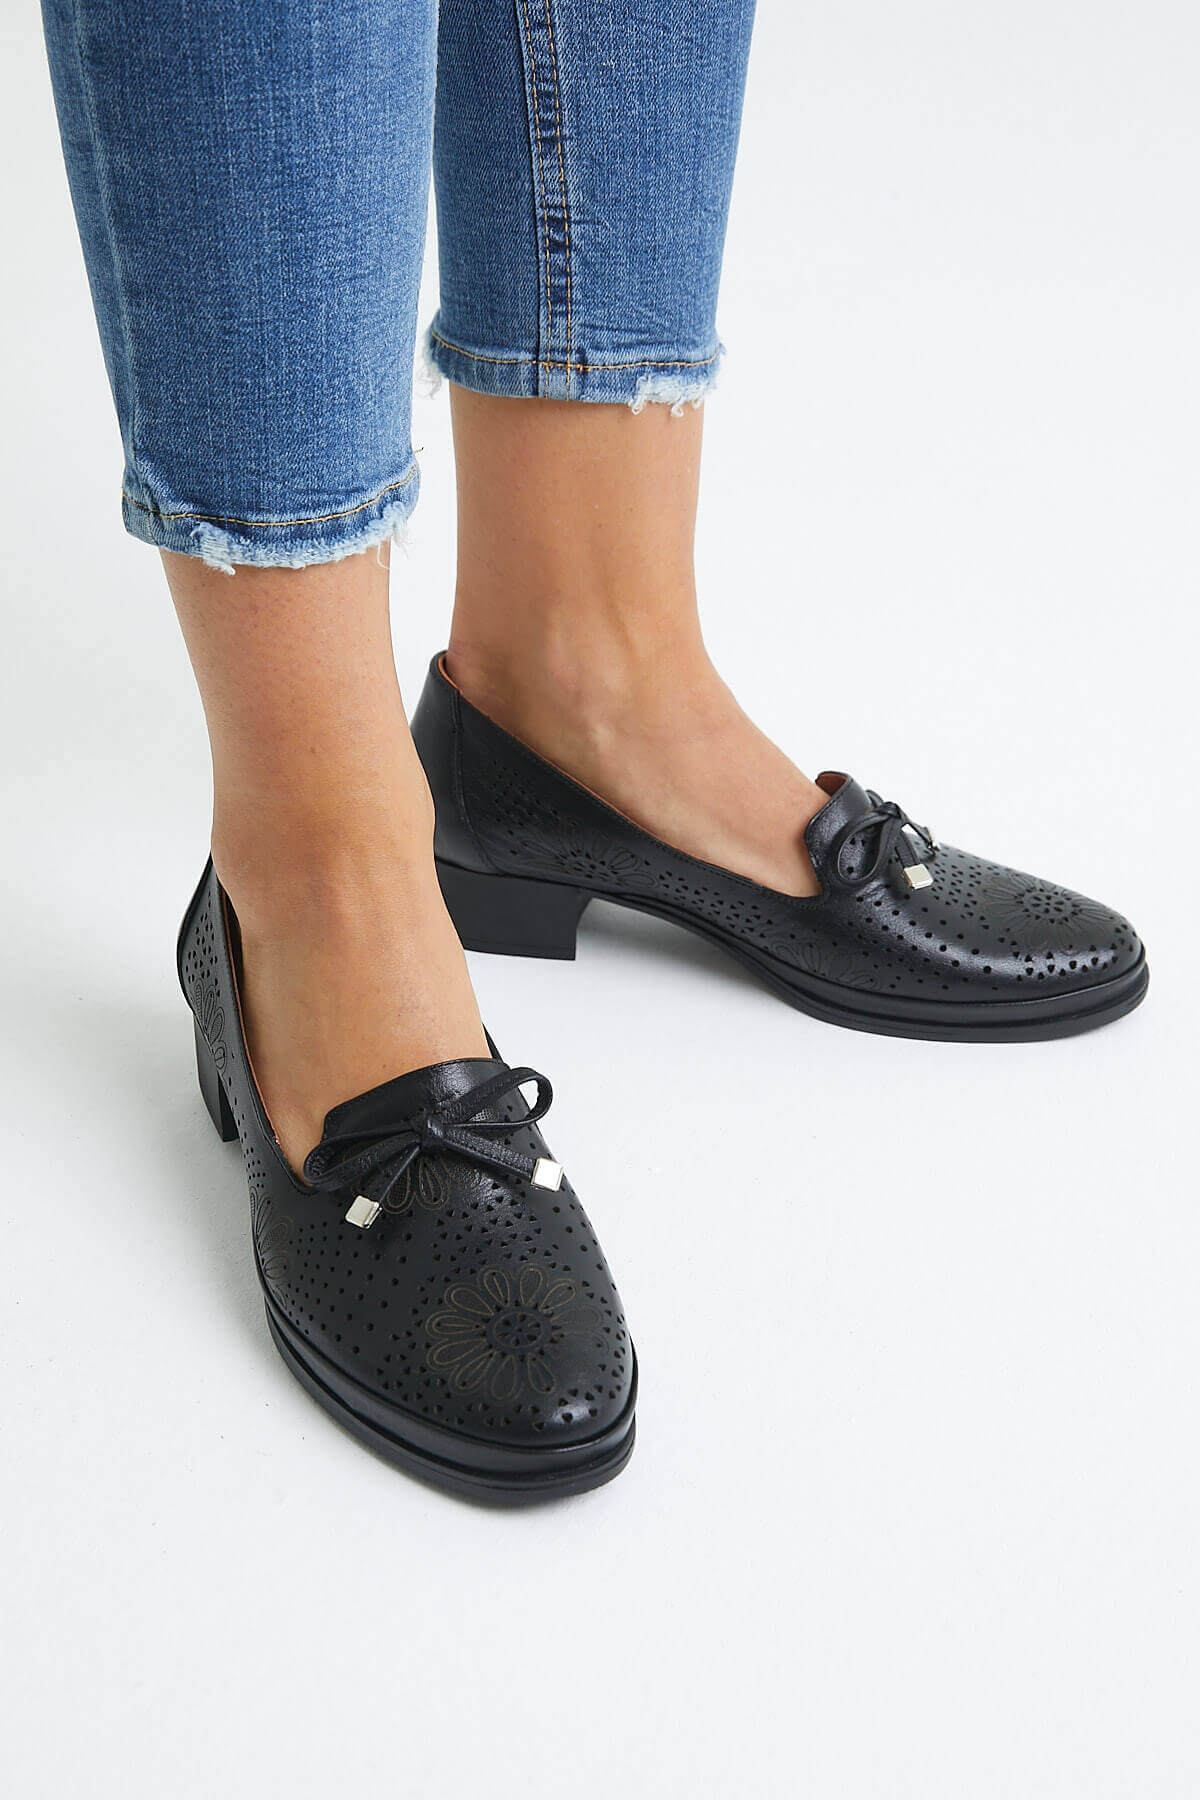 Kadın Topuklu Deri Ayakkabı Siyah 1709214Y - Thumbnail